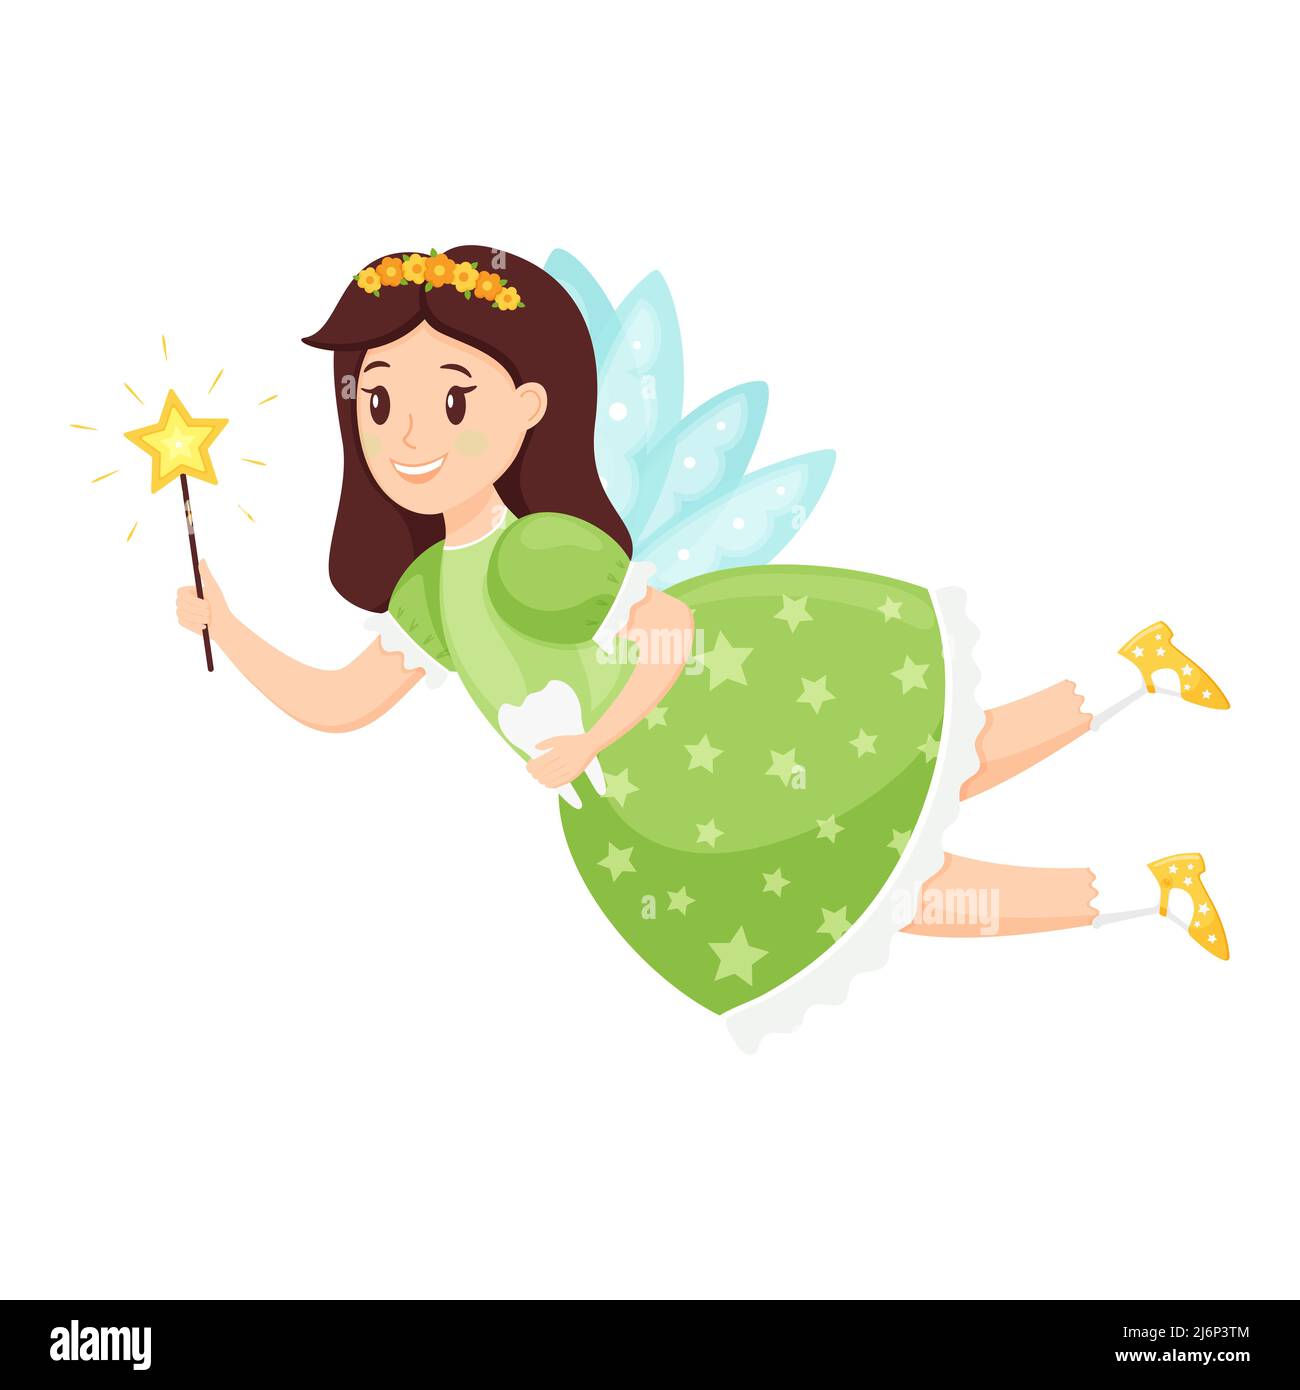 Fata del dente, la principessa con una bacchetta magica ed un dente nelle sue mani che volano su wings.cute il carattere del cartone animato in un vestito è sorridente. Illustrazione vettoriale per Illustrazione Vettoriale